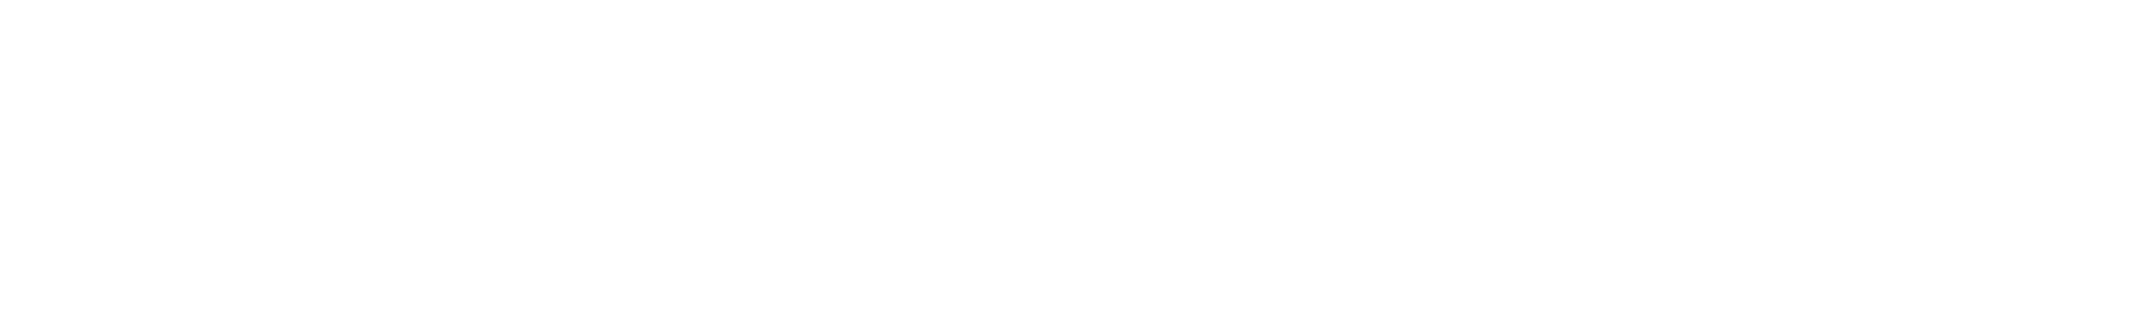 公司logo01白